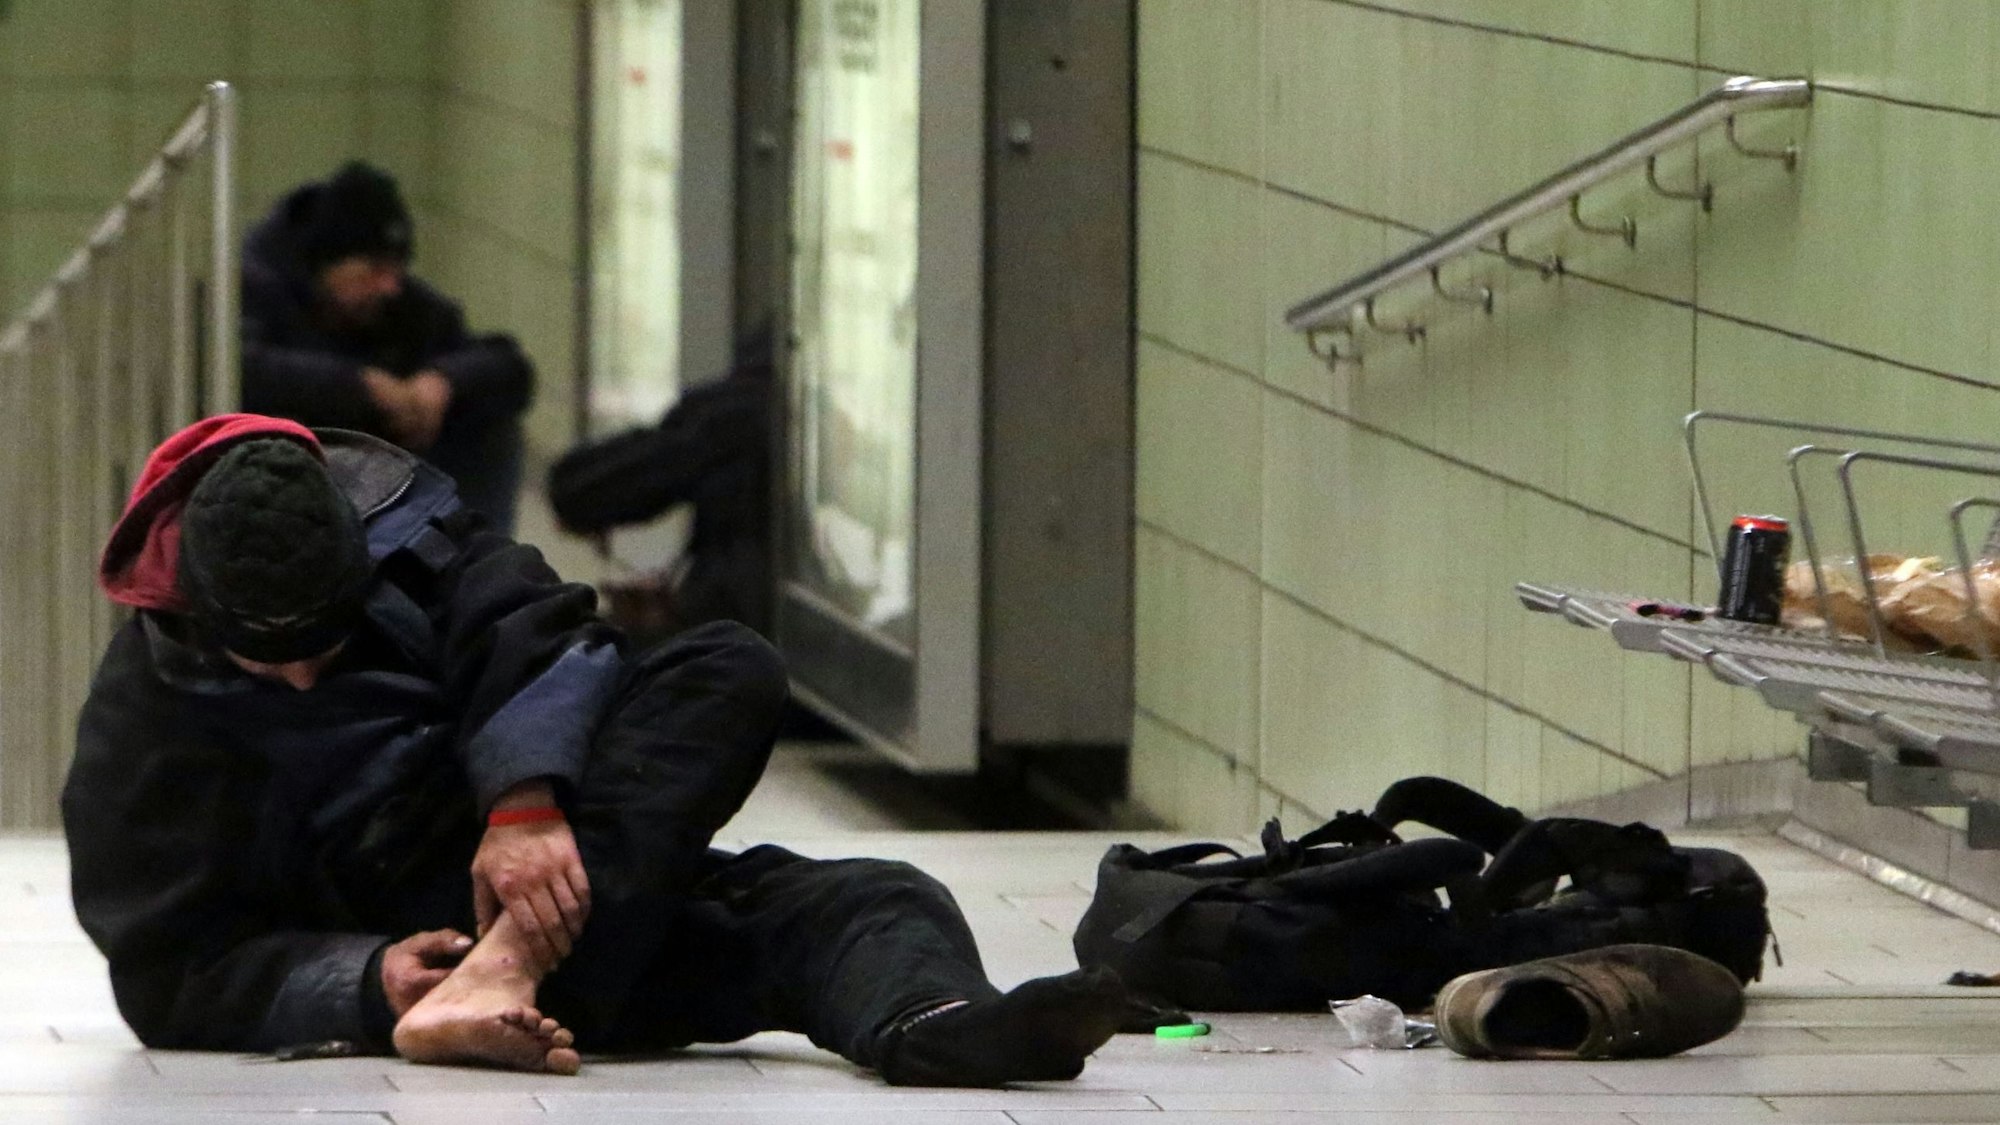 Auf dem Bahnsteig der U-Bahnhaltestelle Friesenplatz setzt sich ein Drogenabhängiger eine Spritze in den Fuß.